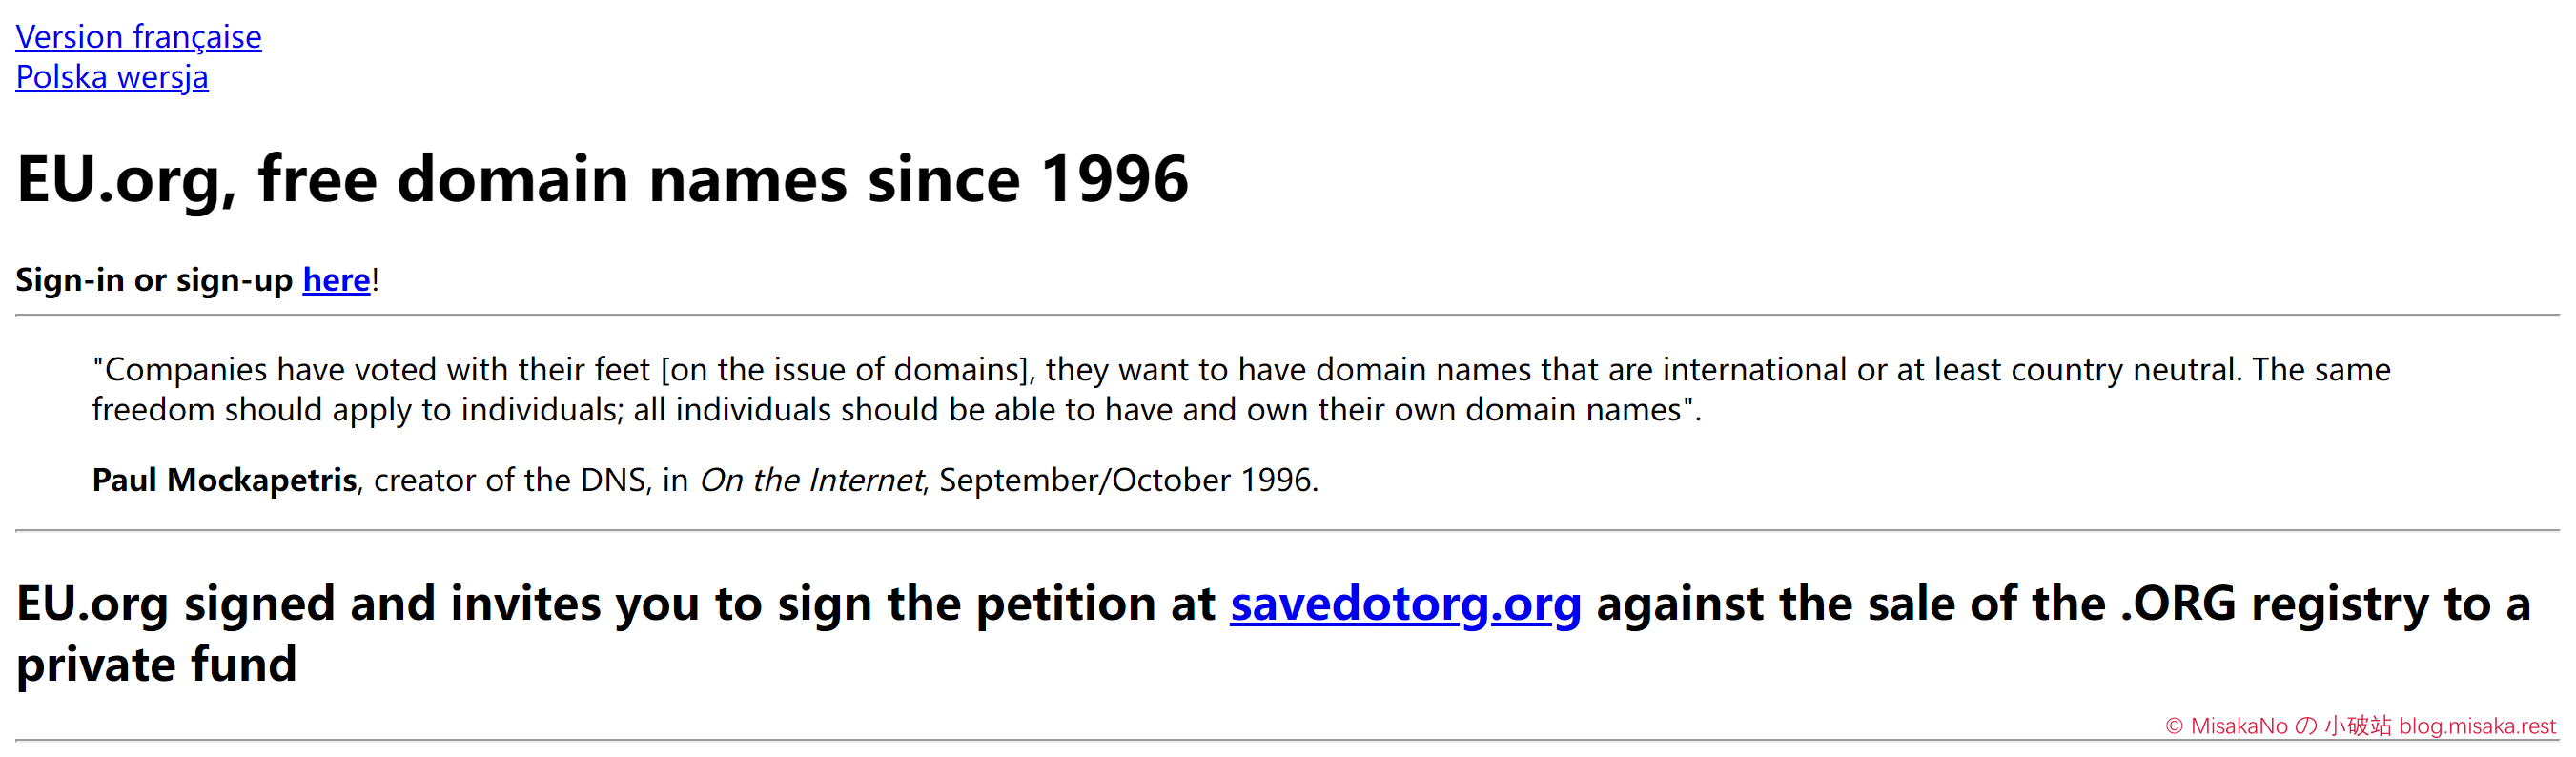 在eu.org申请免费域名